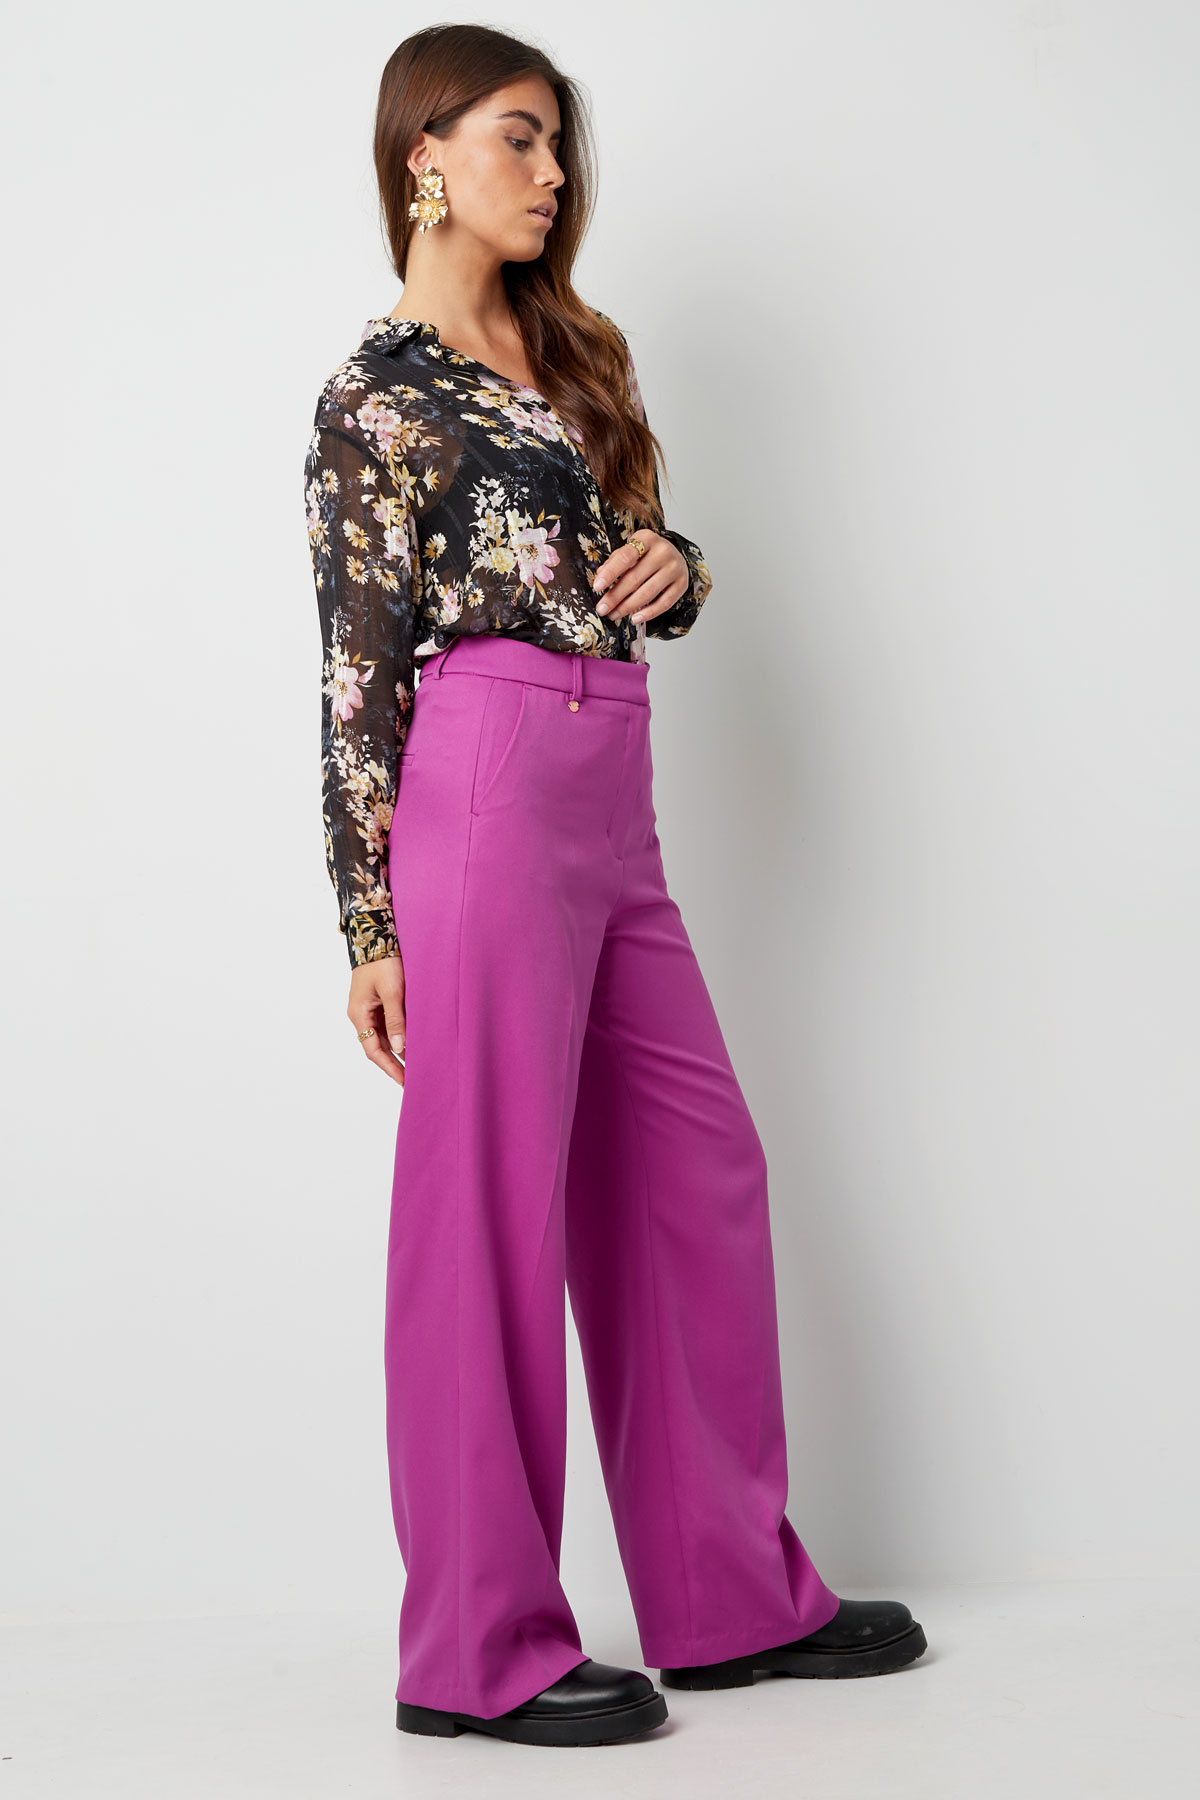 Pantalón plisado - violeta h5 Imagen7